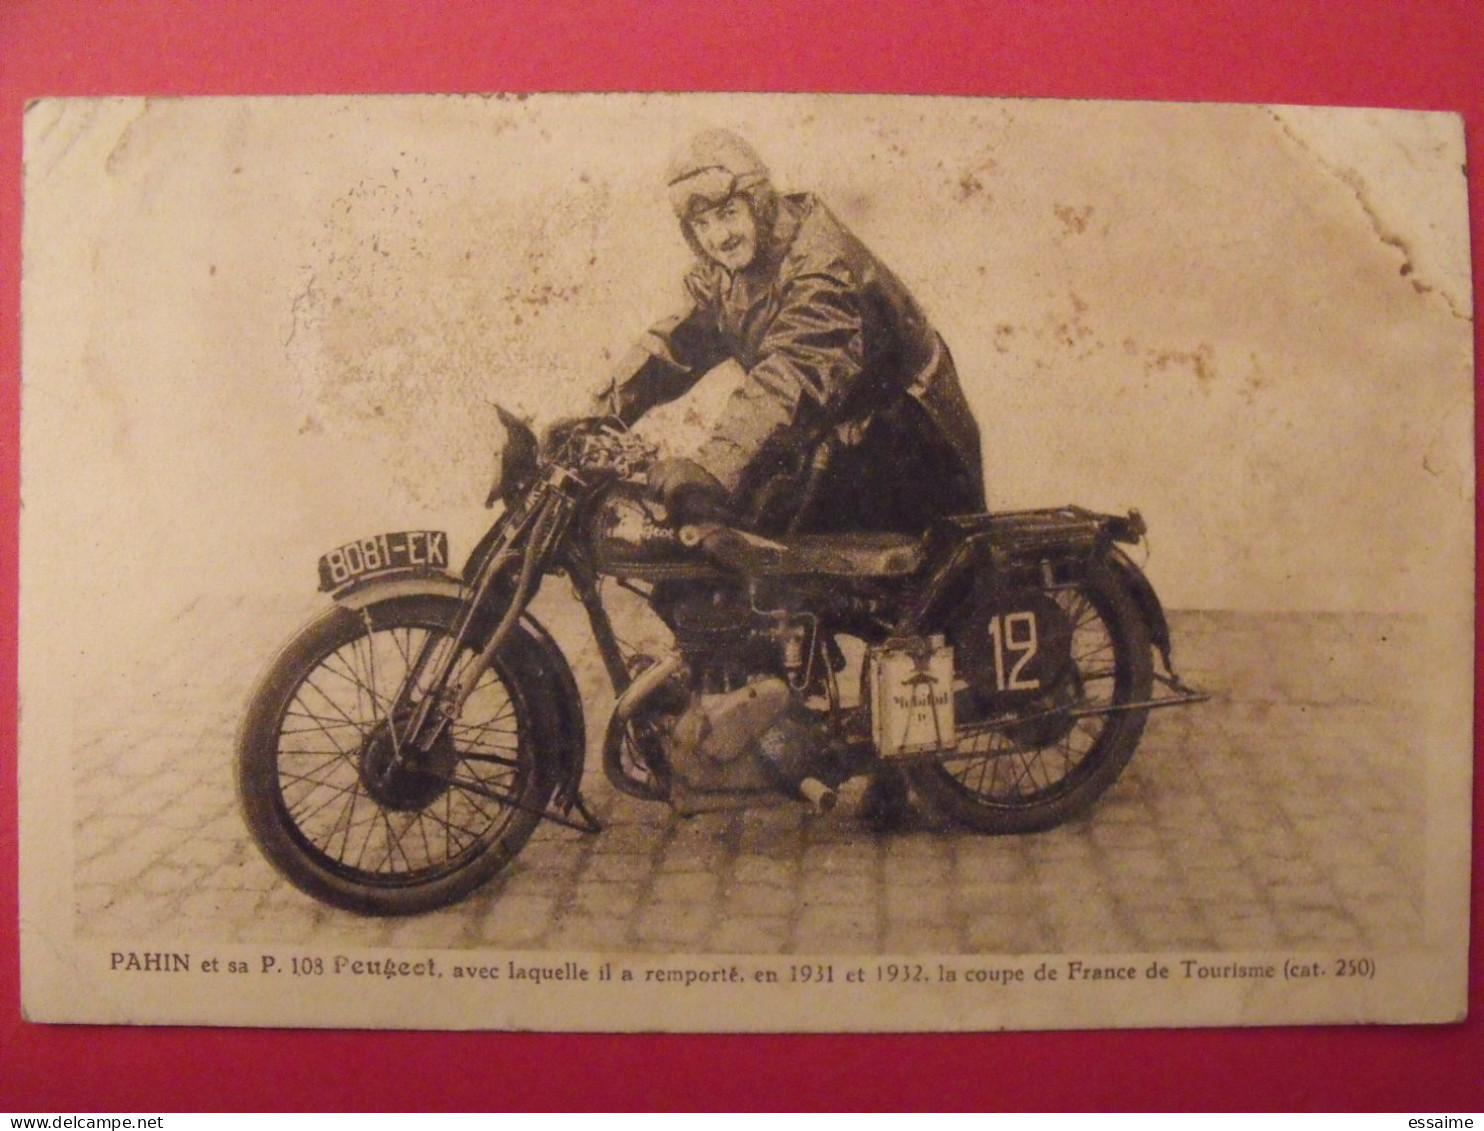 Carte Postale. Pahin Et Sa P 108 Peugeot. Moto 250 Cc. Coupe De France De Tourisme 1931 1932 - Sportsmen